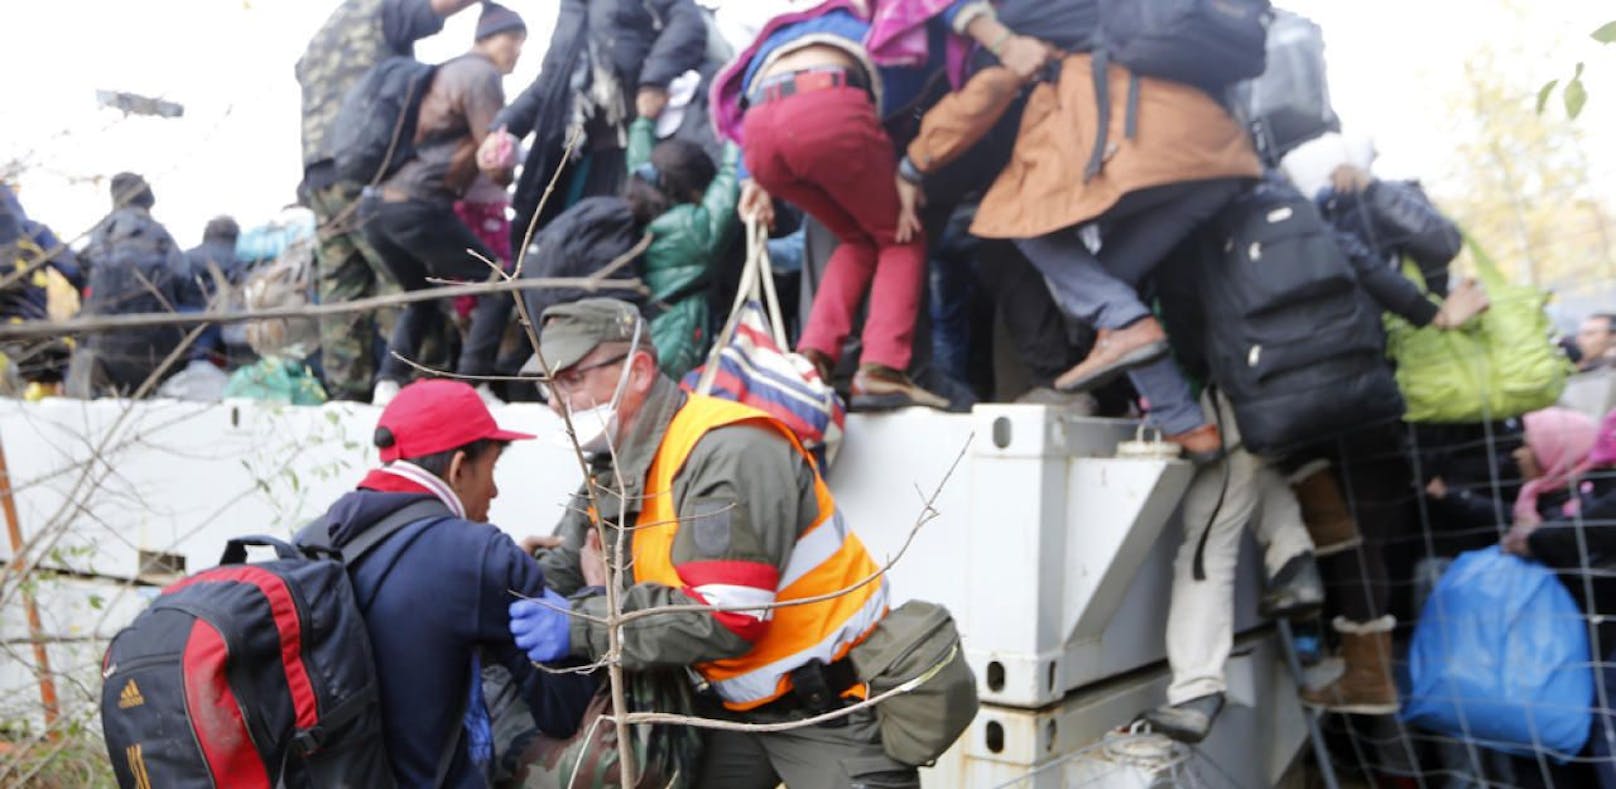 Flüchtlinge warten auf die Einreise nach Österreich. (Archivfoto)